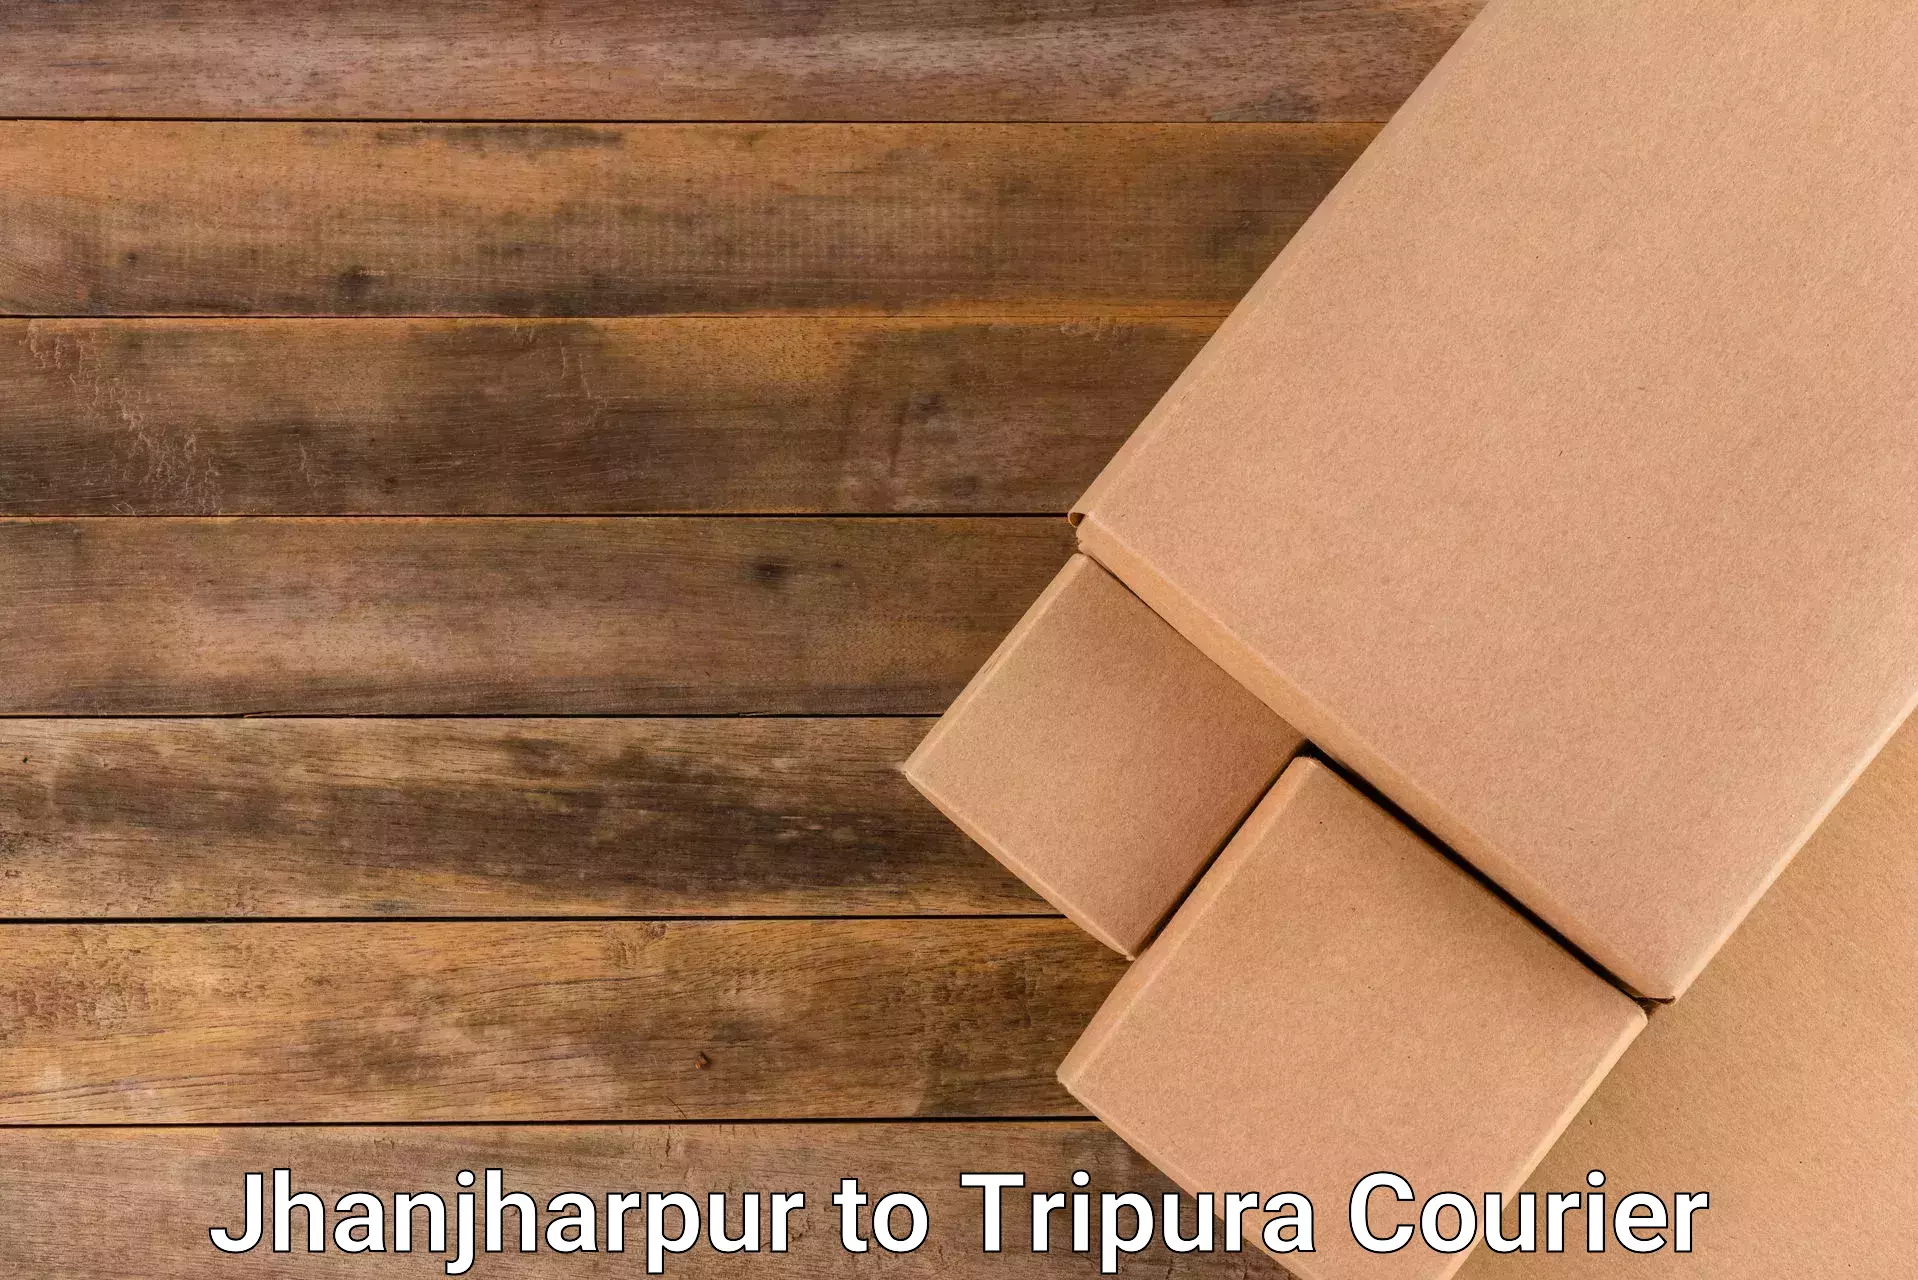 Efficient order fulfillment Jhanjharpur to Dhalai